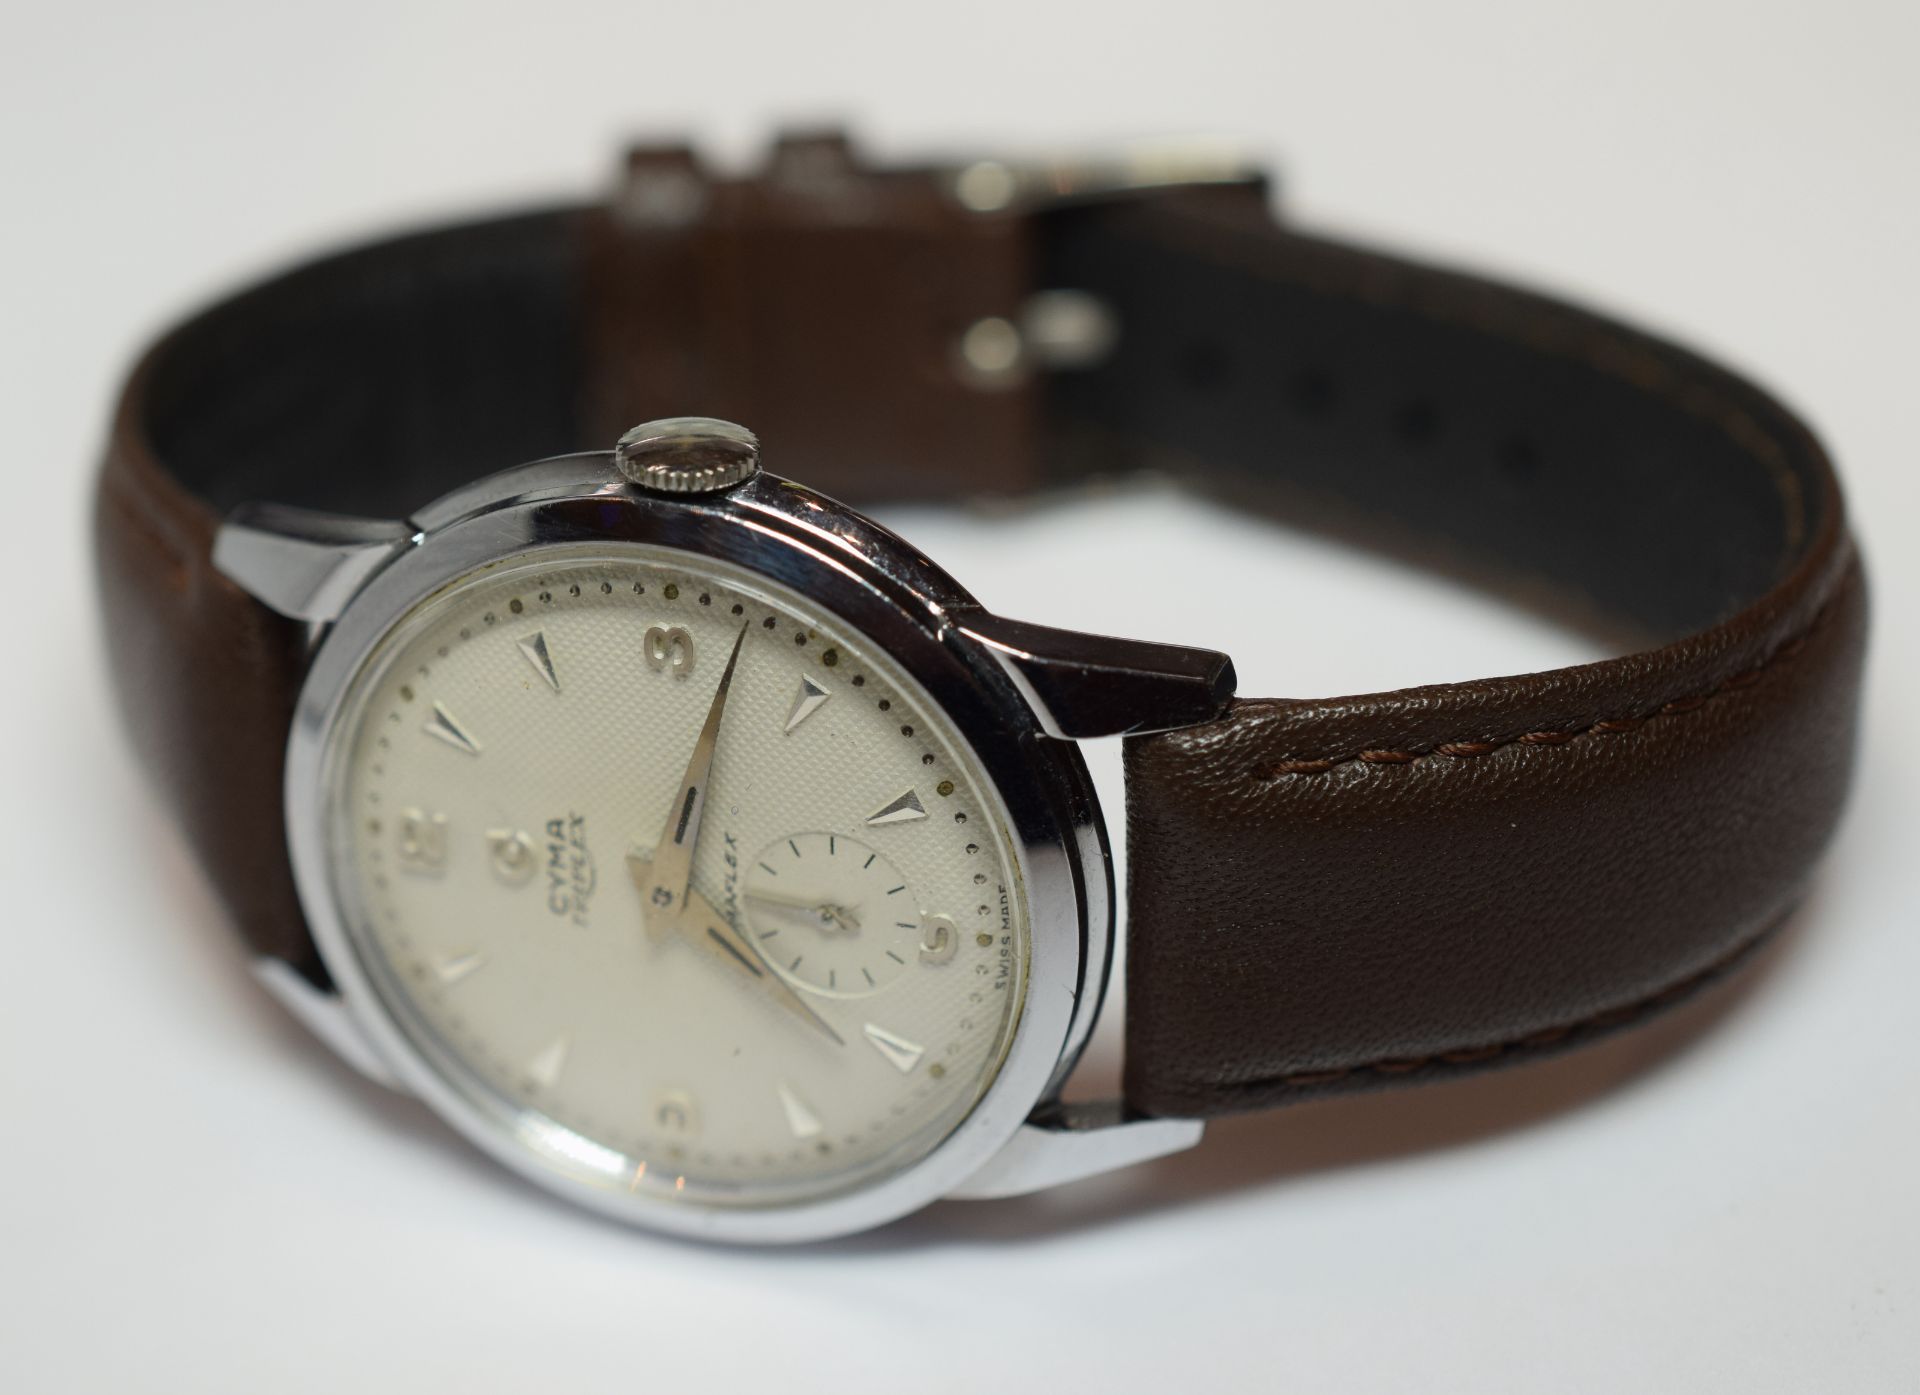 Cyma Gentleman's Cymaflex Wristwatch - Image 2 of 4